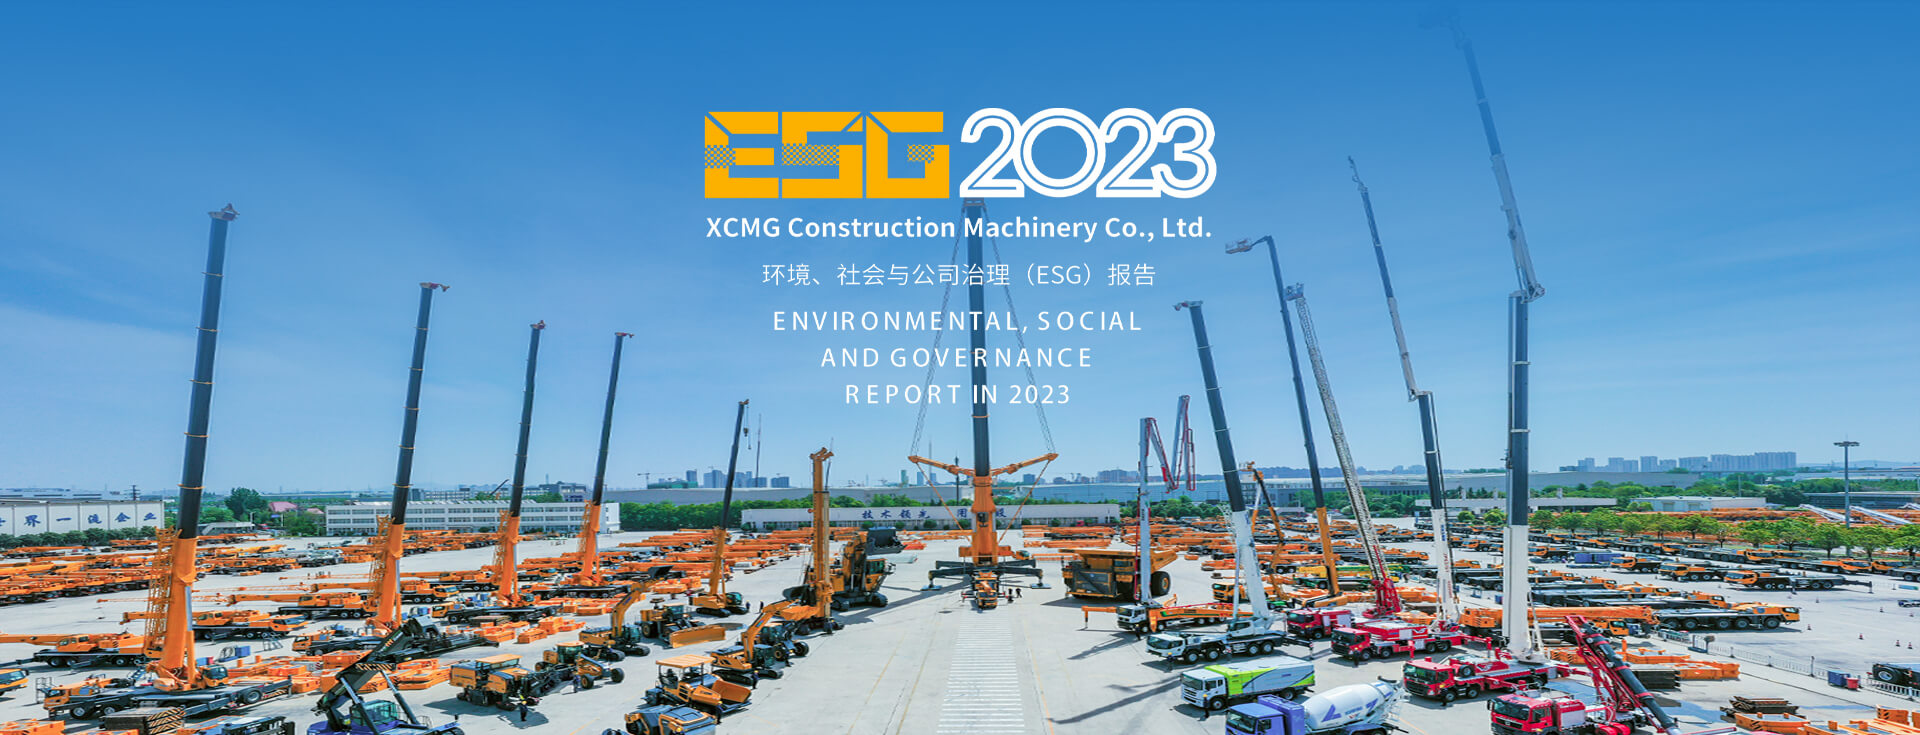 Xuzhou Construction Machinery Group Global